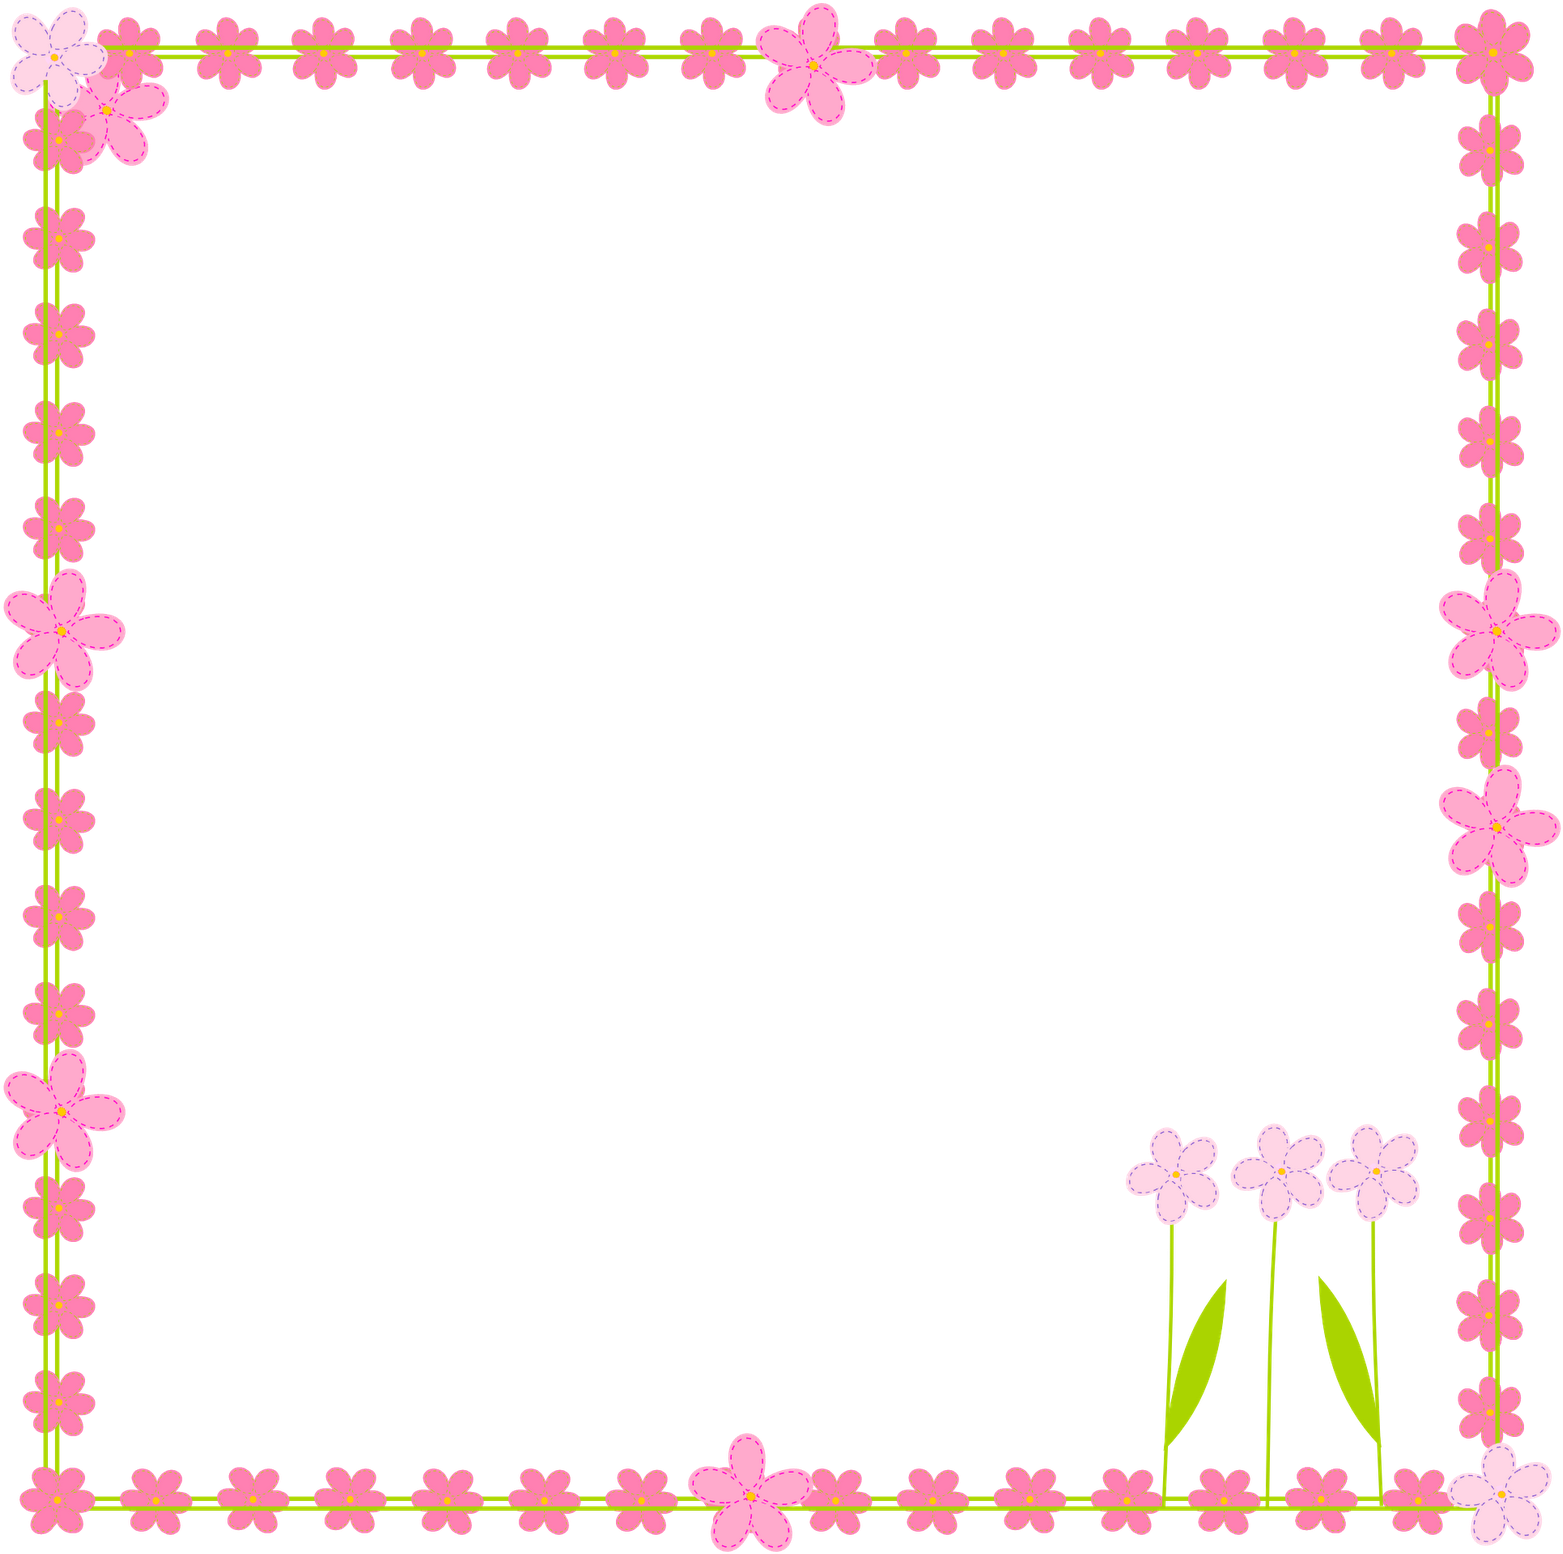 Border Frame Vector Square Flower PNG Image